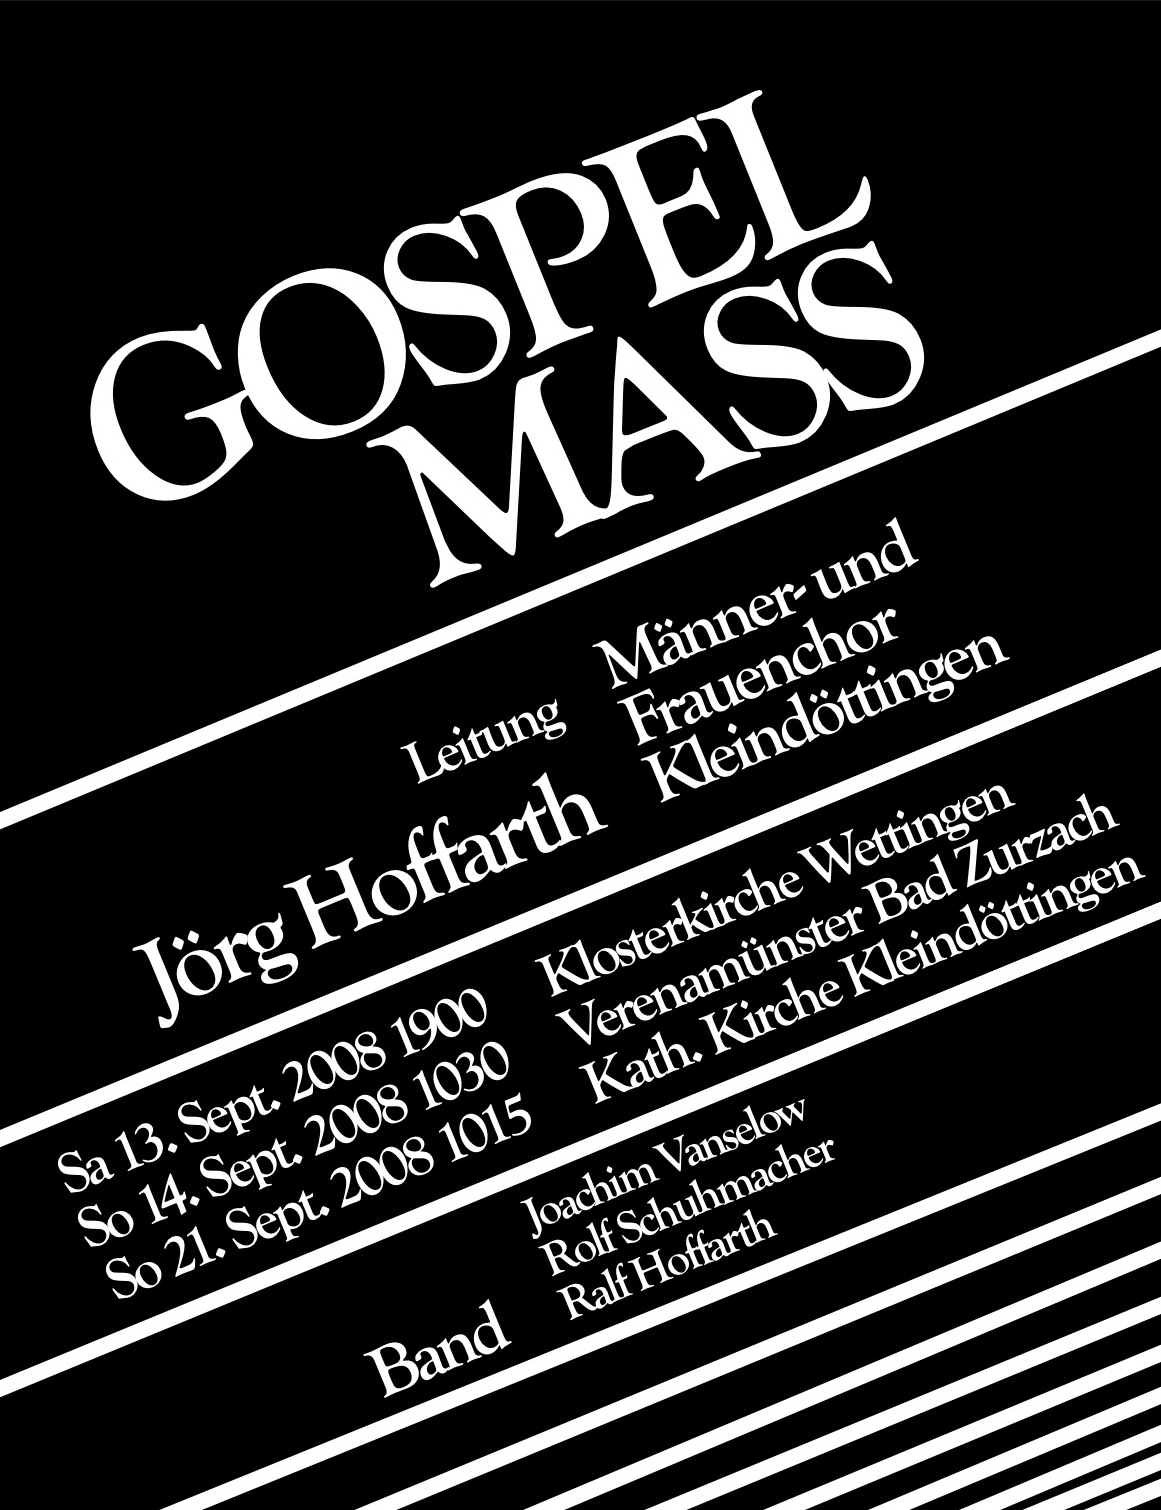 Gosperl Mass